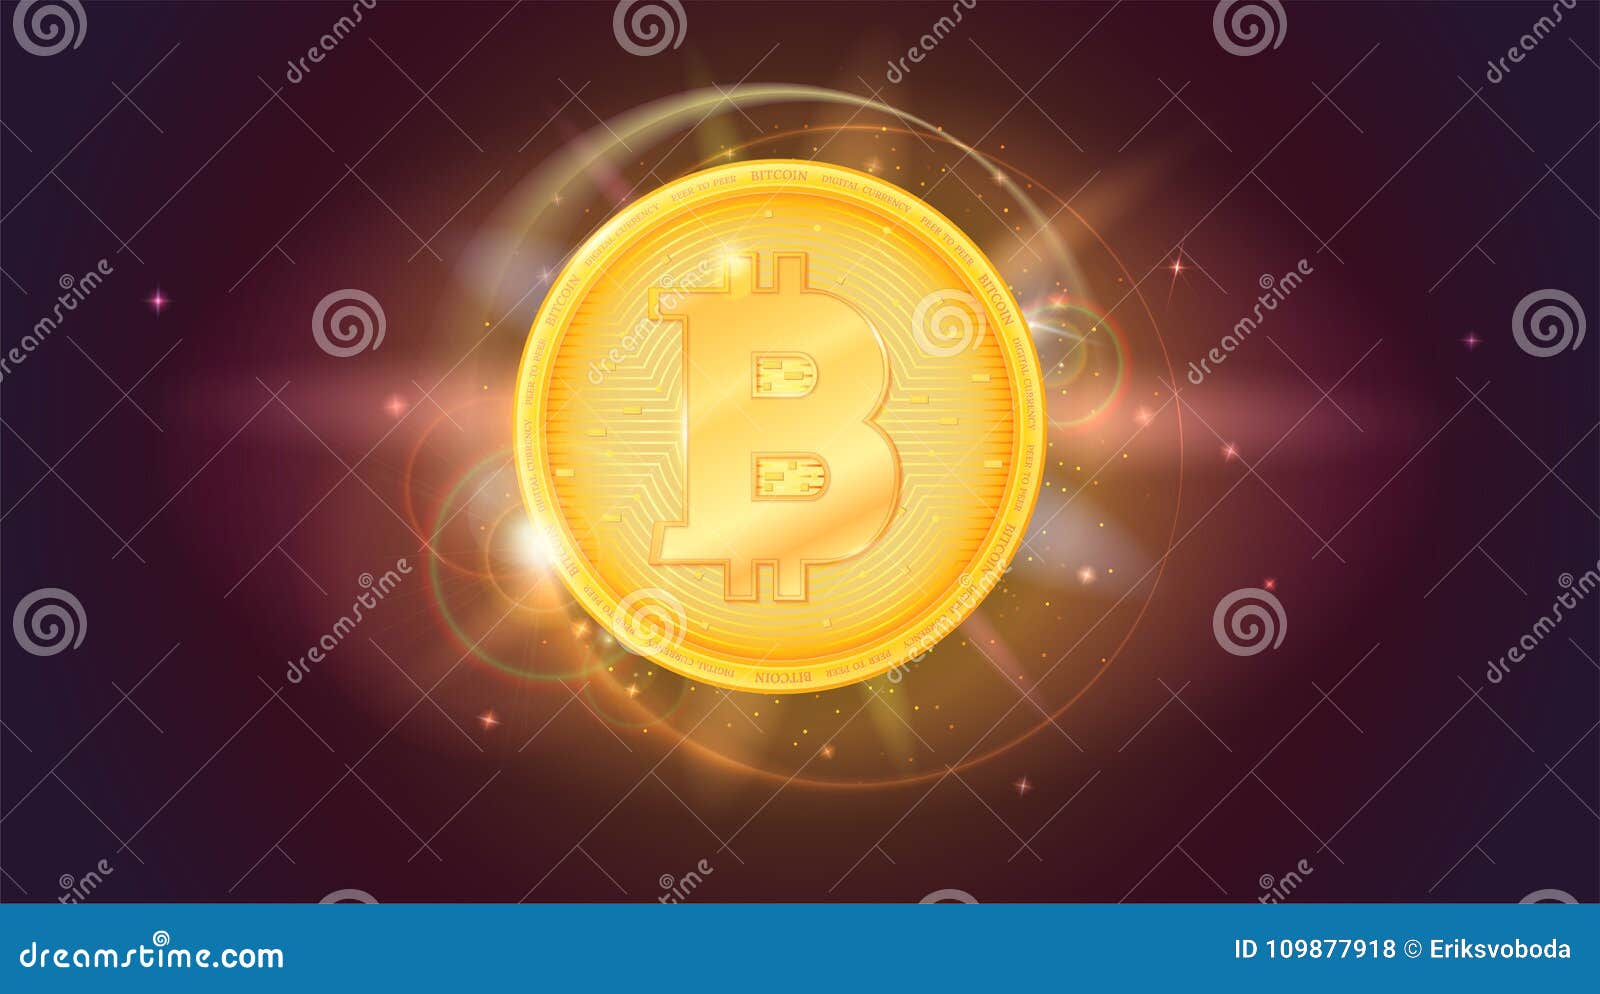 bitcoin star